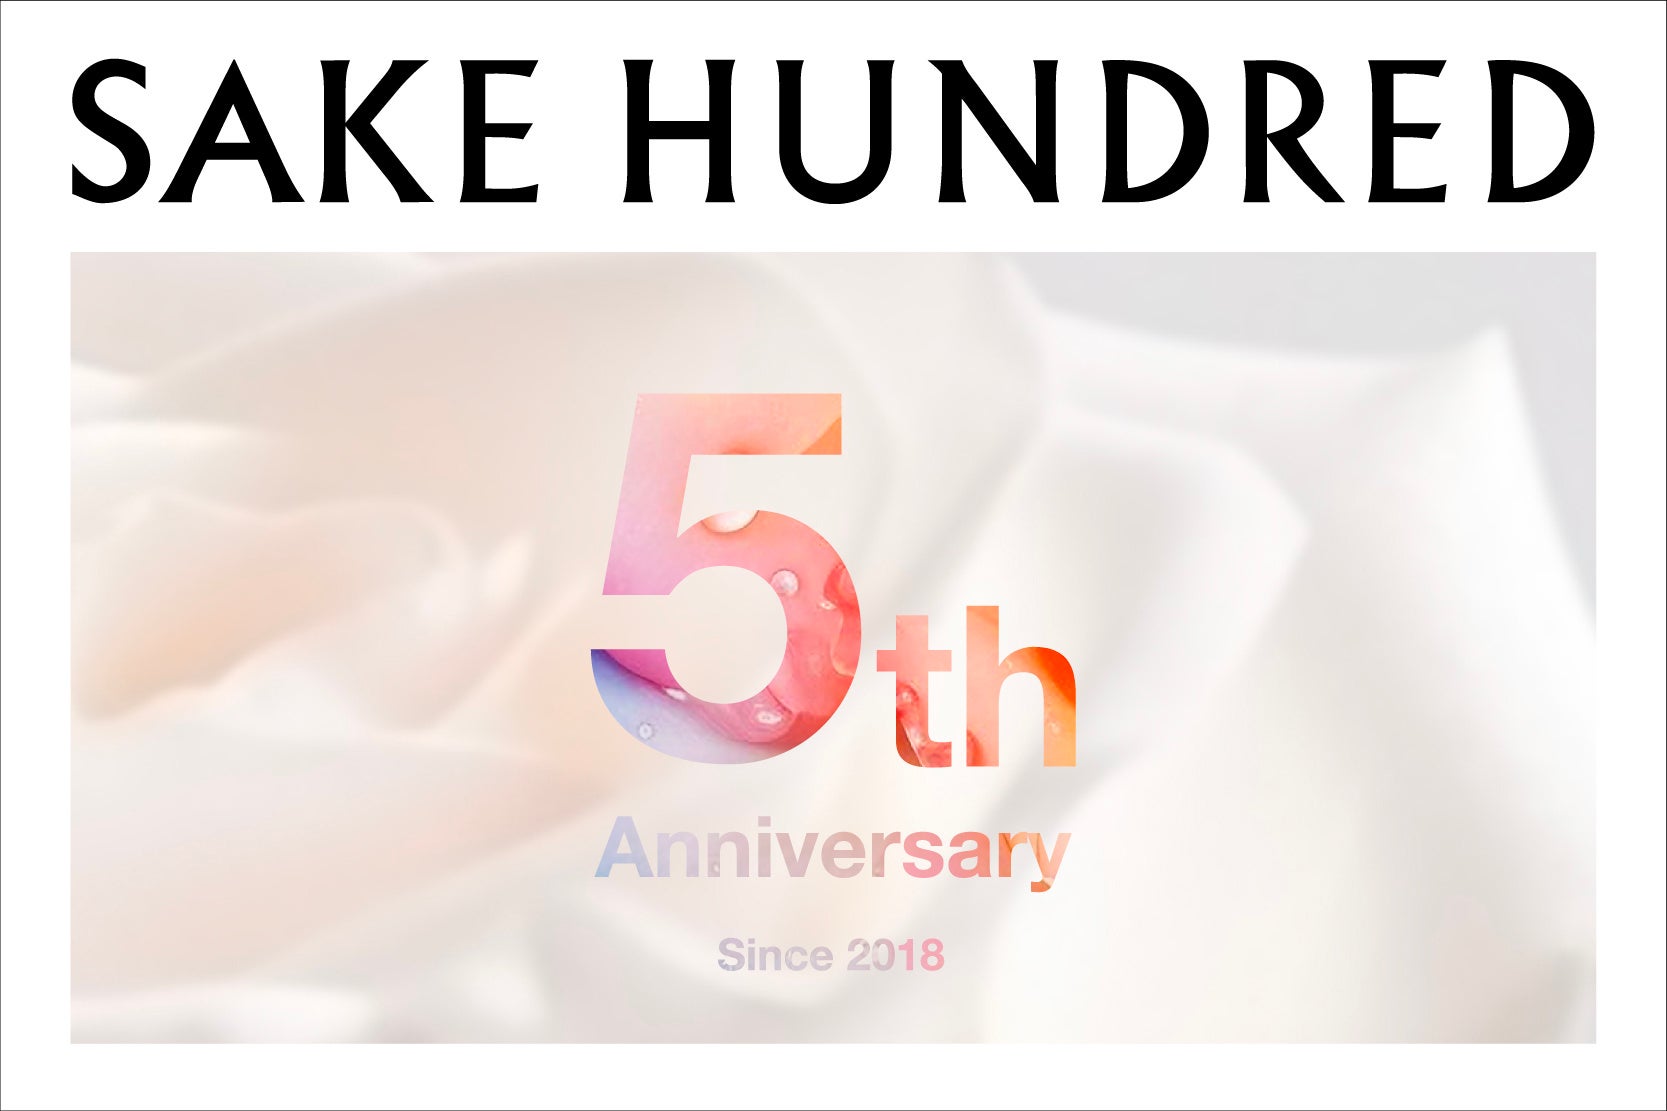 抽選で豪華ディナーにご招待。5周年を迎えた日本酒ブランド「SAKE HUNDRED」、7月31日まで応募受付中